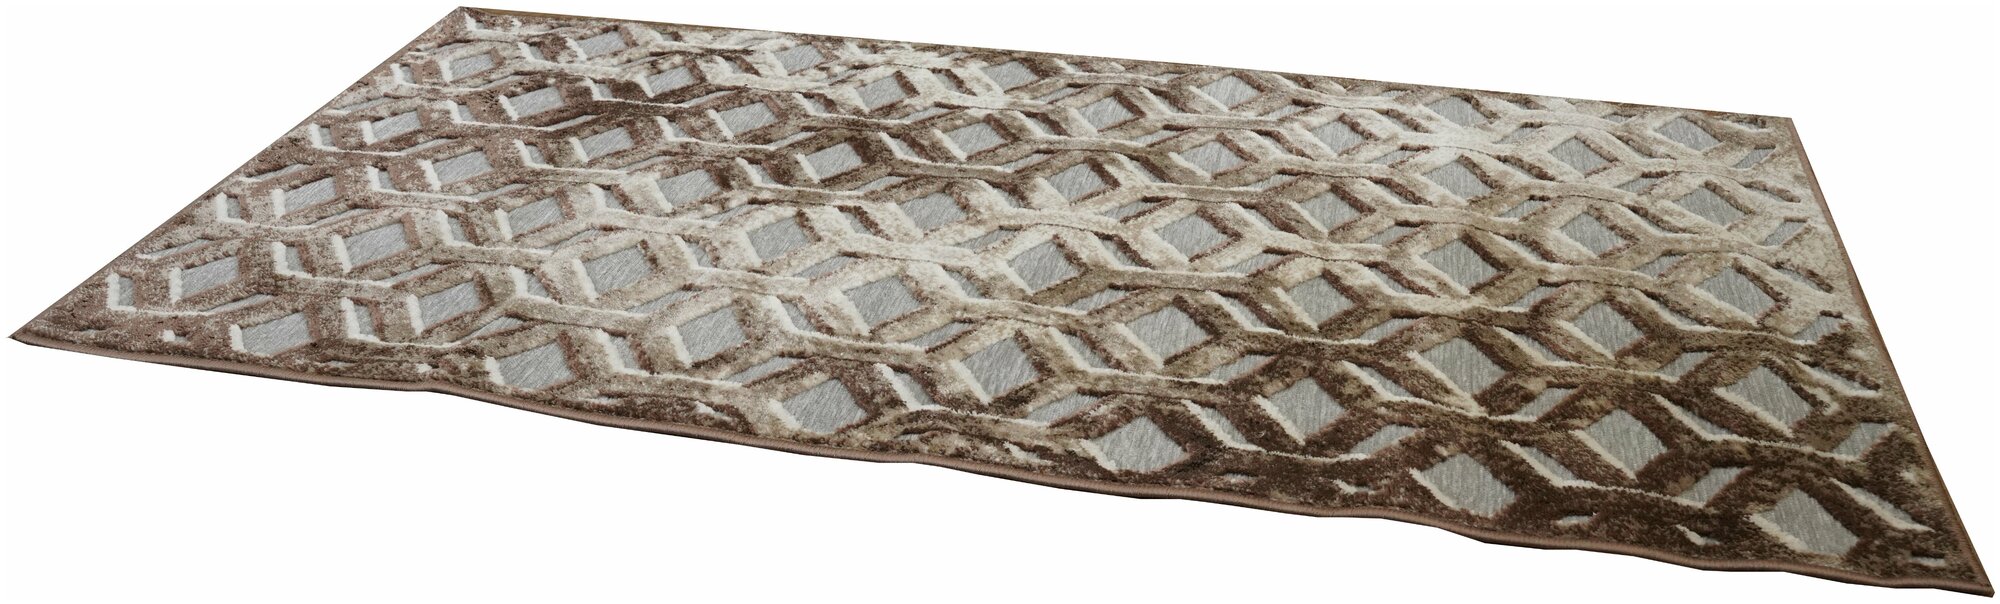 Ковер Dream floor Джелато Грей 4294/a2/glg 0.8*1.5 коврик на пол, прикроватный коврик в спальню, коврик в прихожую - фотография № 6